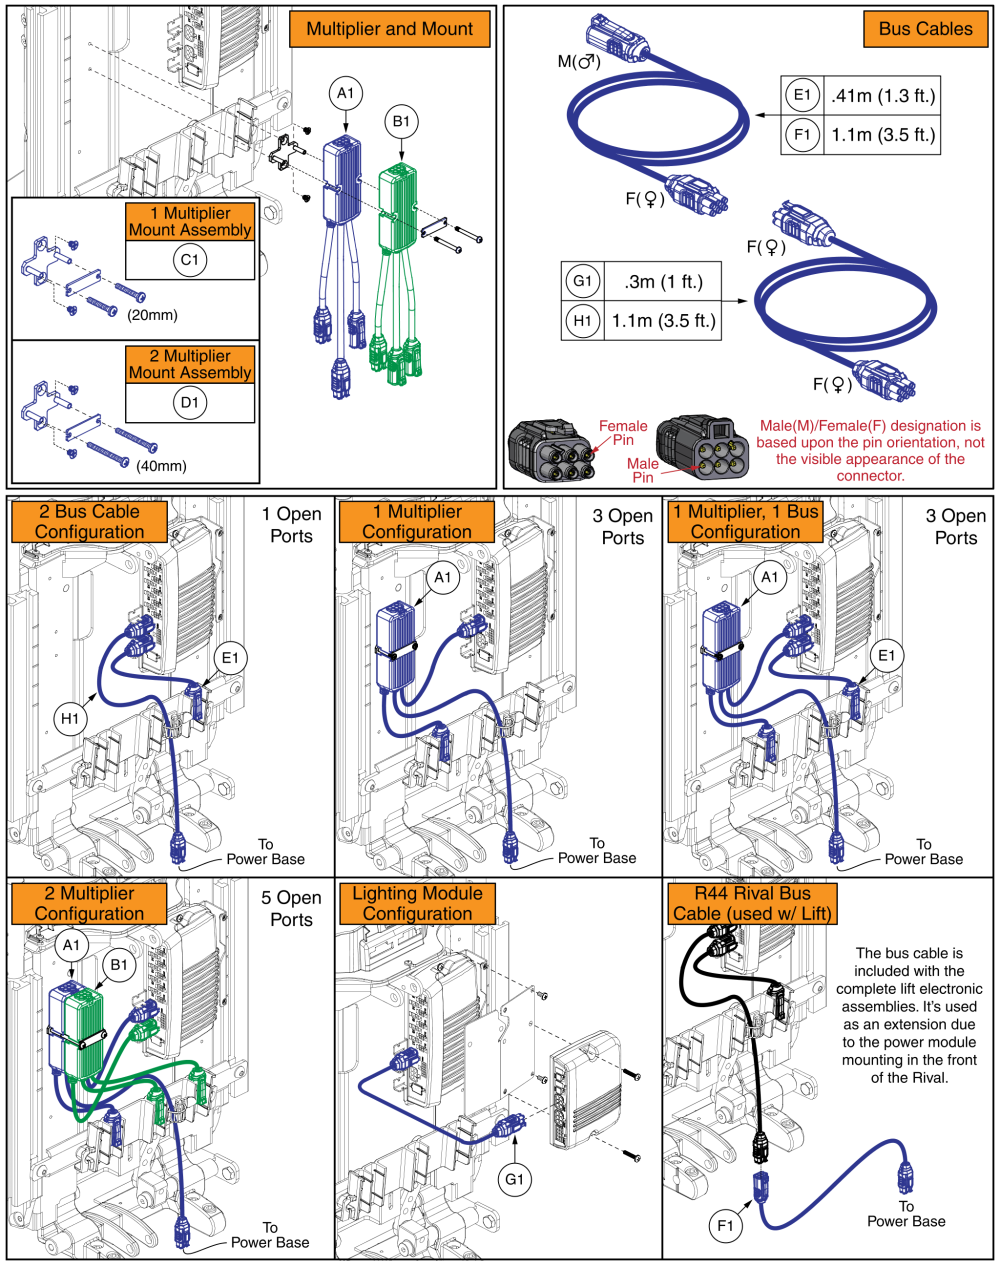 Q-logic 3 Multiplier Harnesses, Mounts, & Bus Cables - Tb3 parts diagram